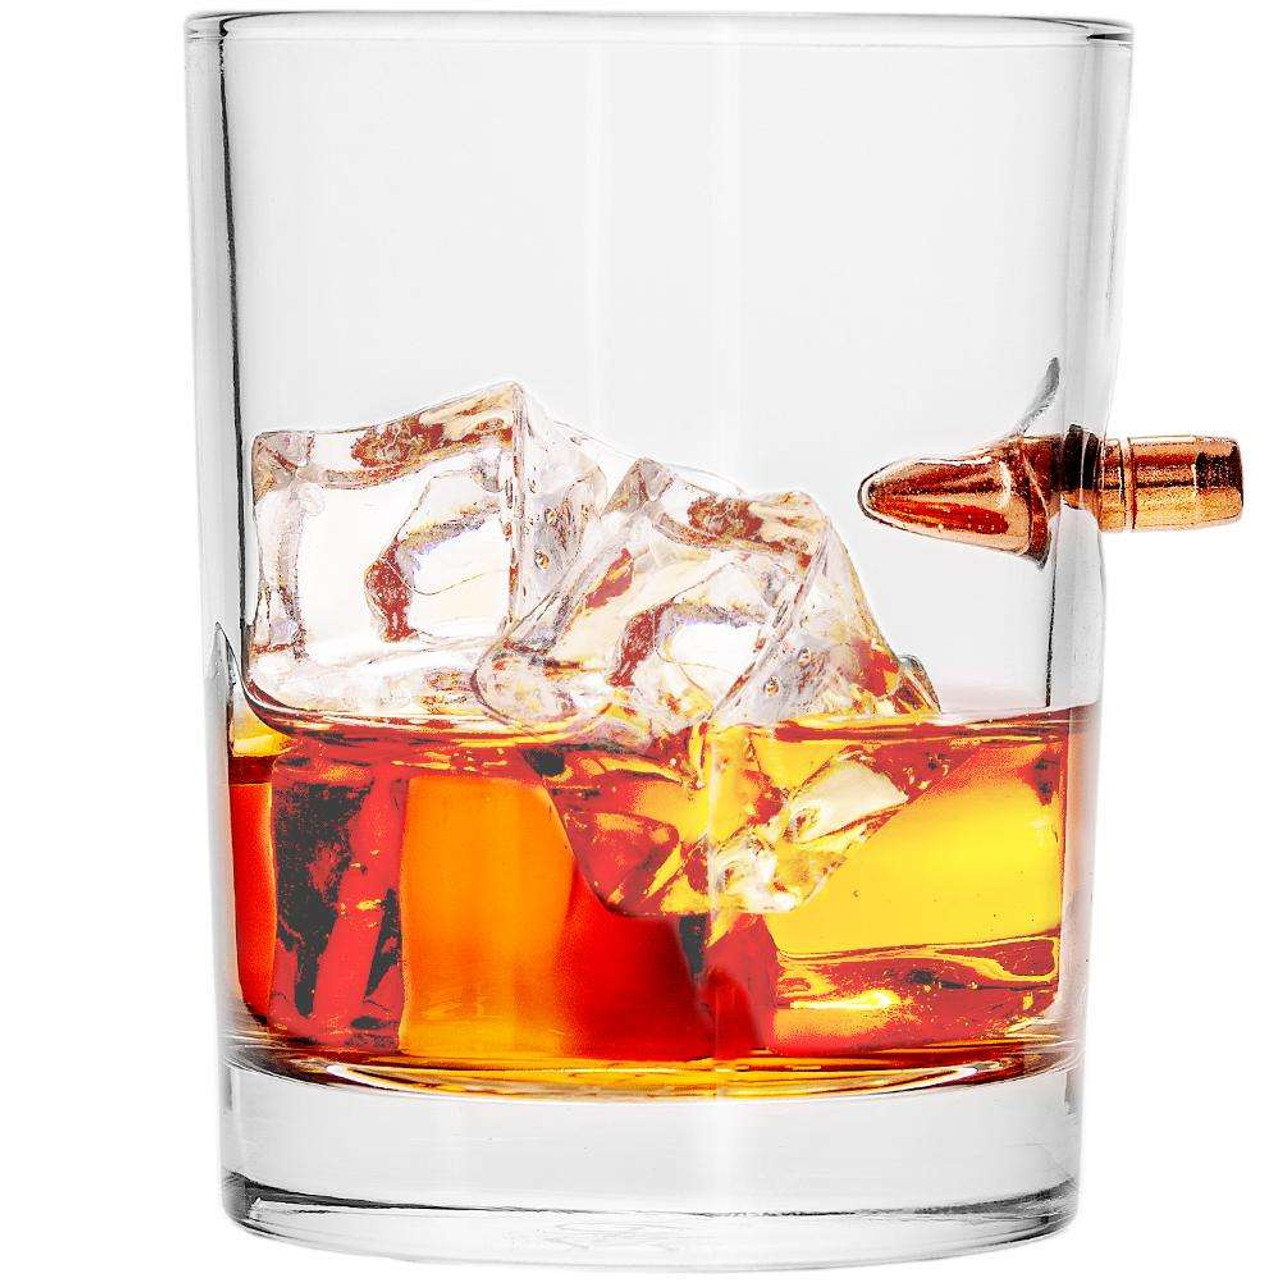 Lavish Last Name Engraved Old Fashioned Whiskey Glass